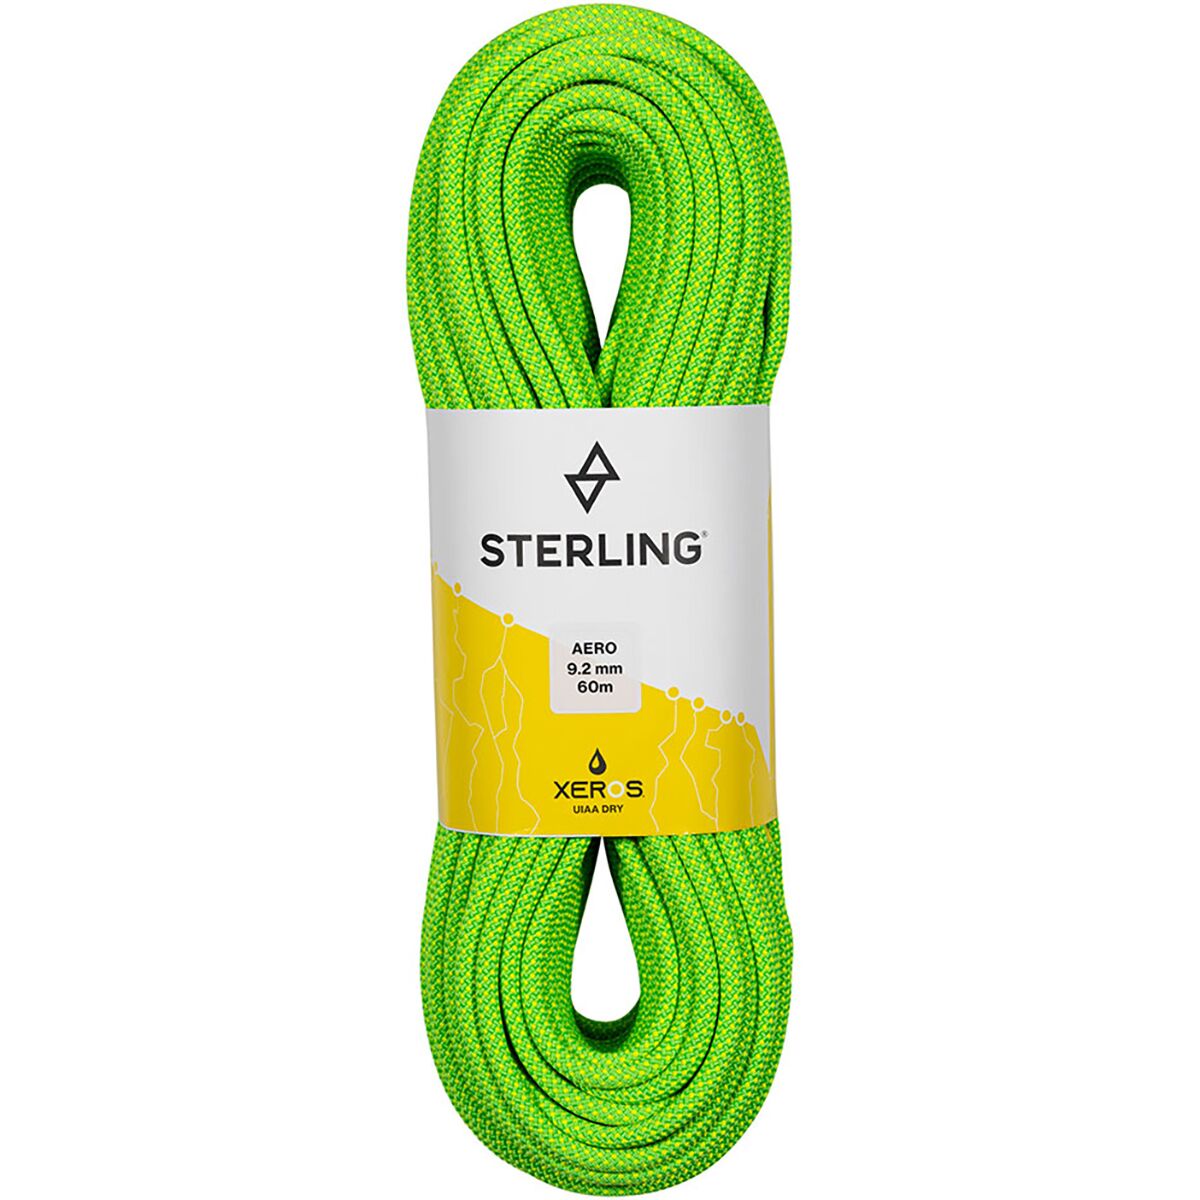 Sterling Aero 9.2 BiColor XEROS Rope